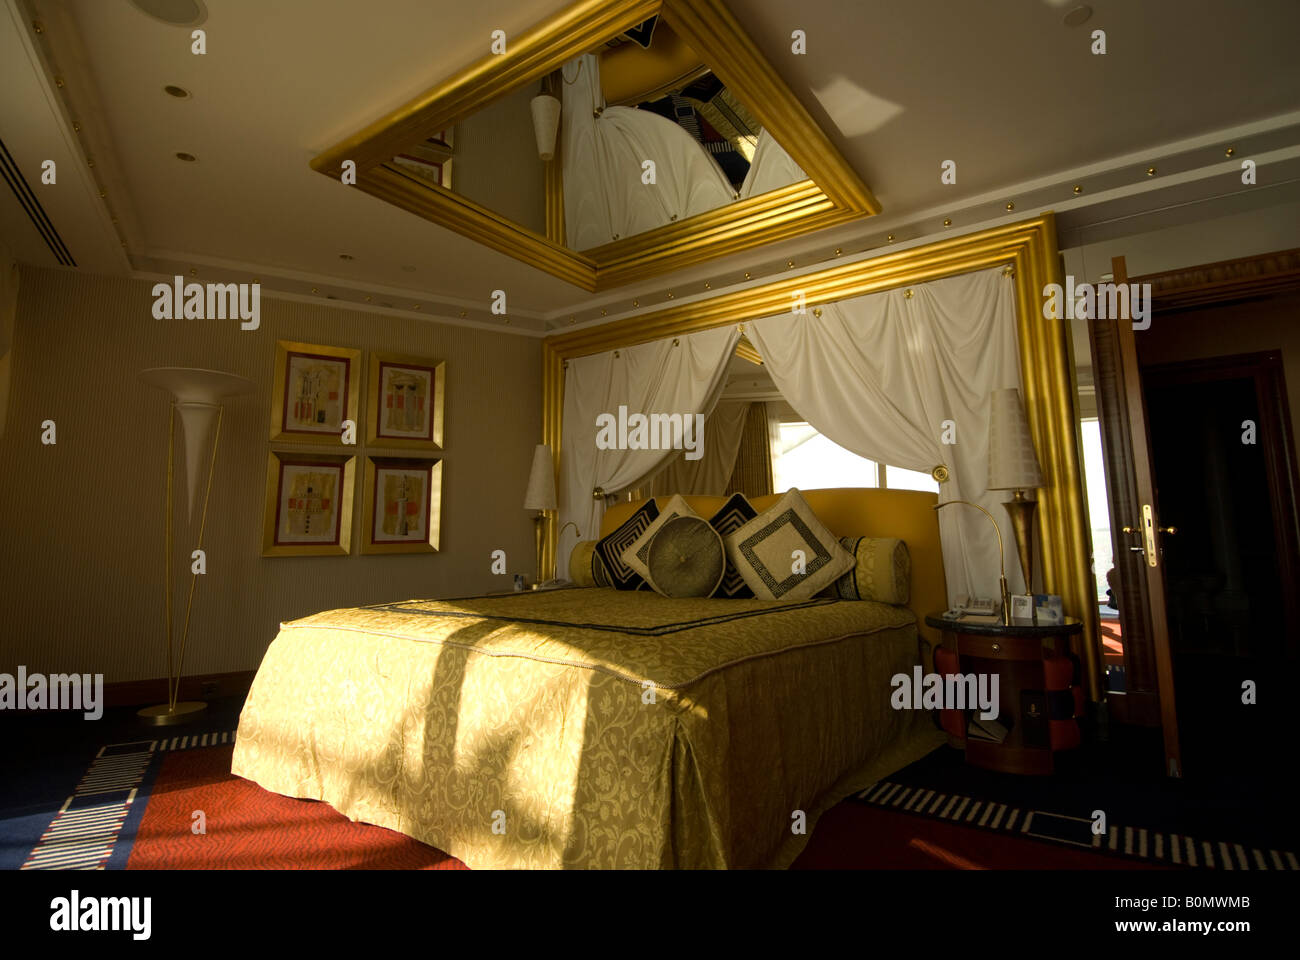 Plafond miroir Banque de photographies et d'images à haute résolution -  Alamy